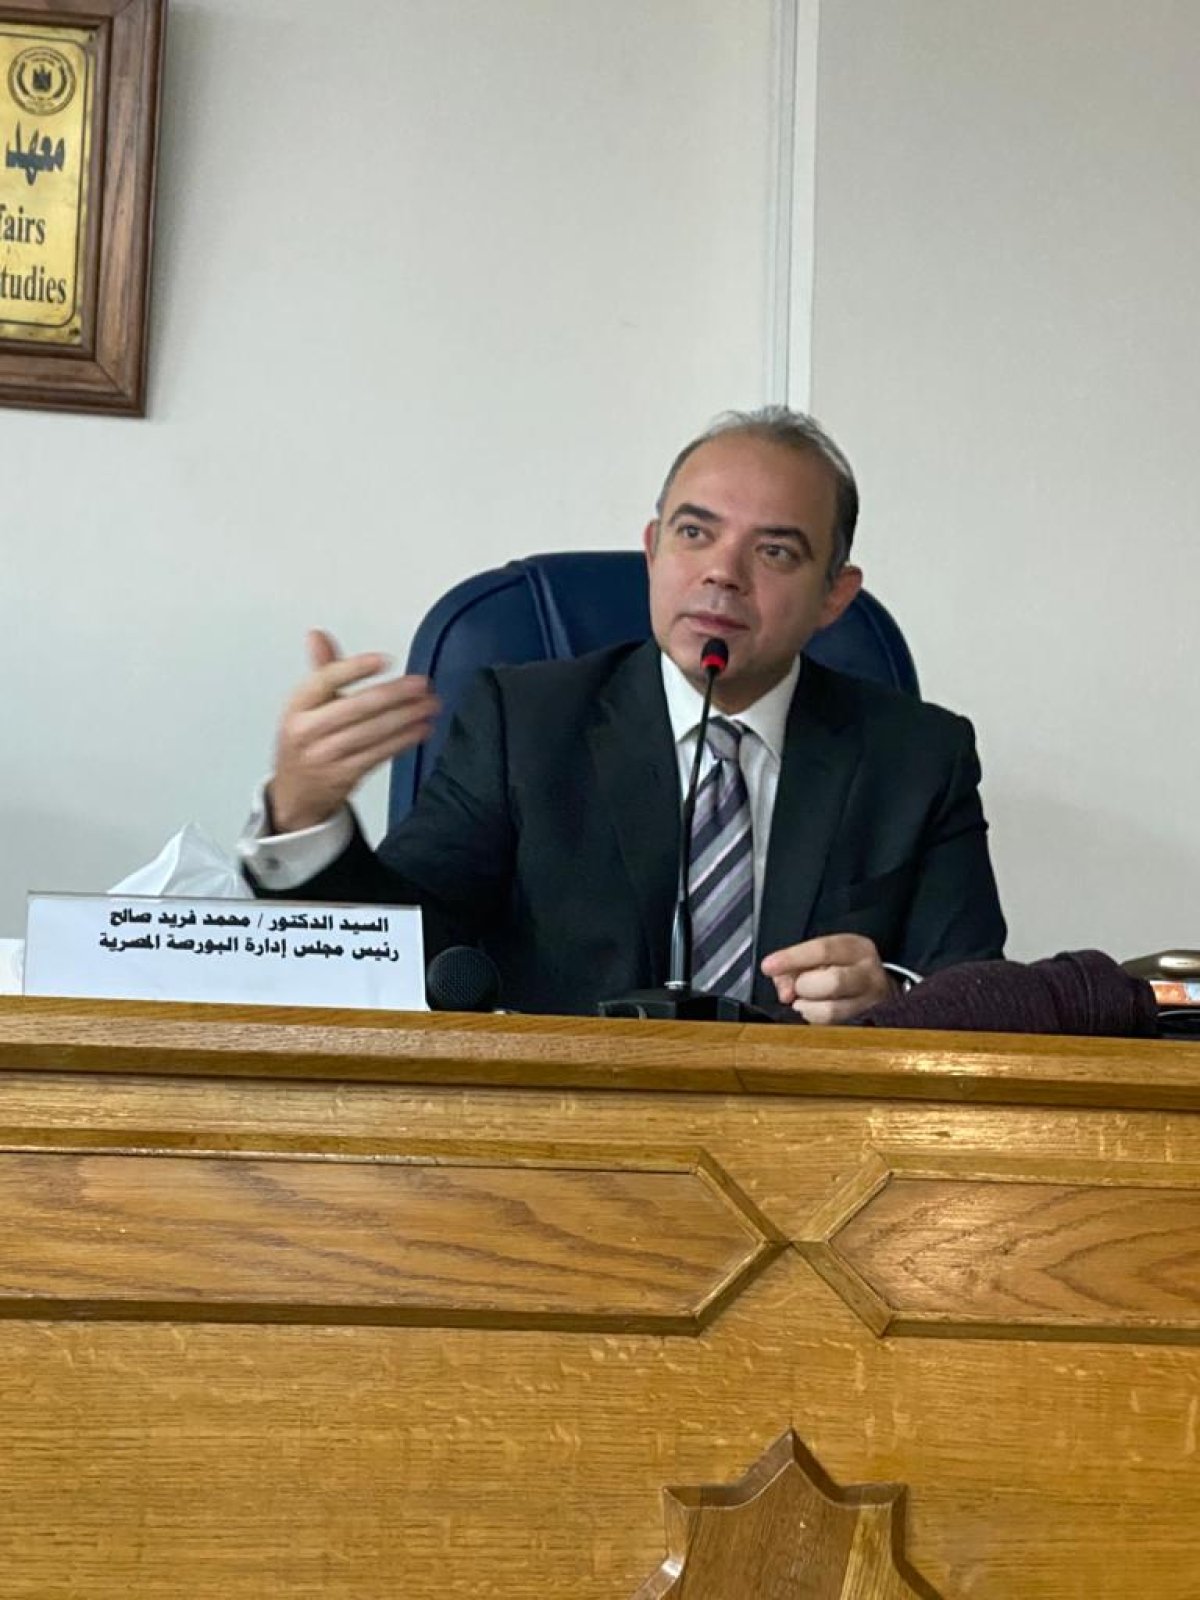 عاجل: قرار رئاسي بتكليف الدكتور محمد فريد قائمًا بأعمال رئيس الرقابة المالية لمدة عام